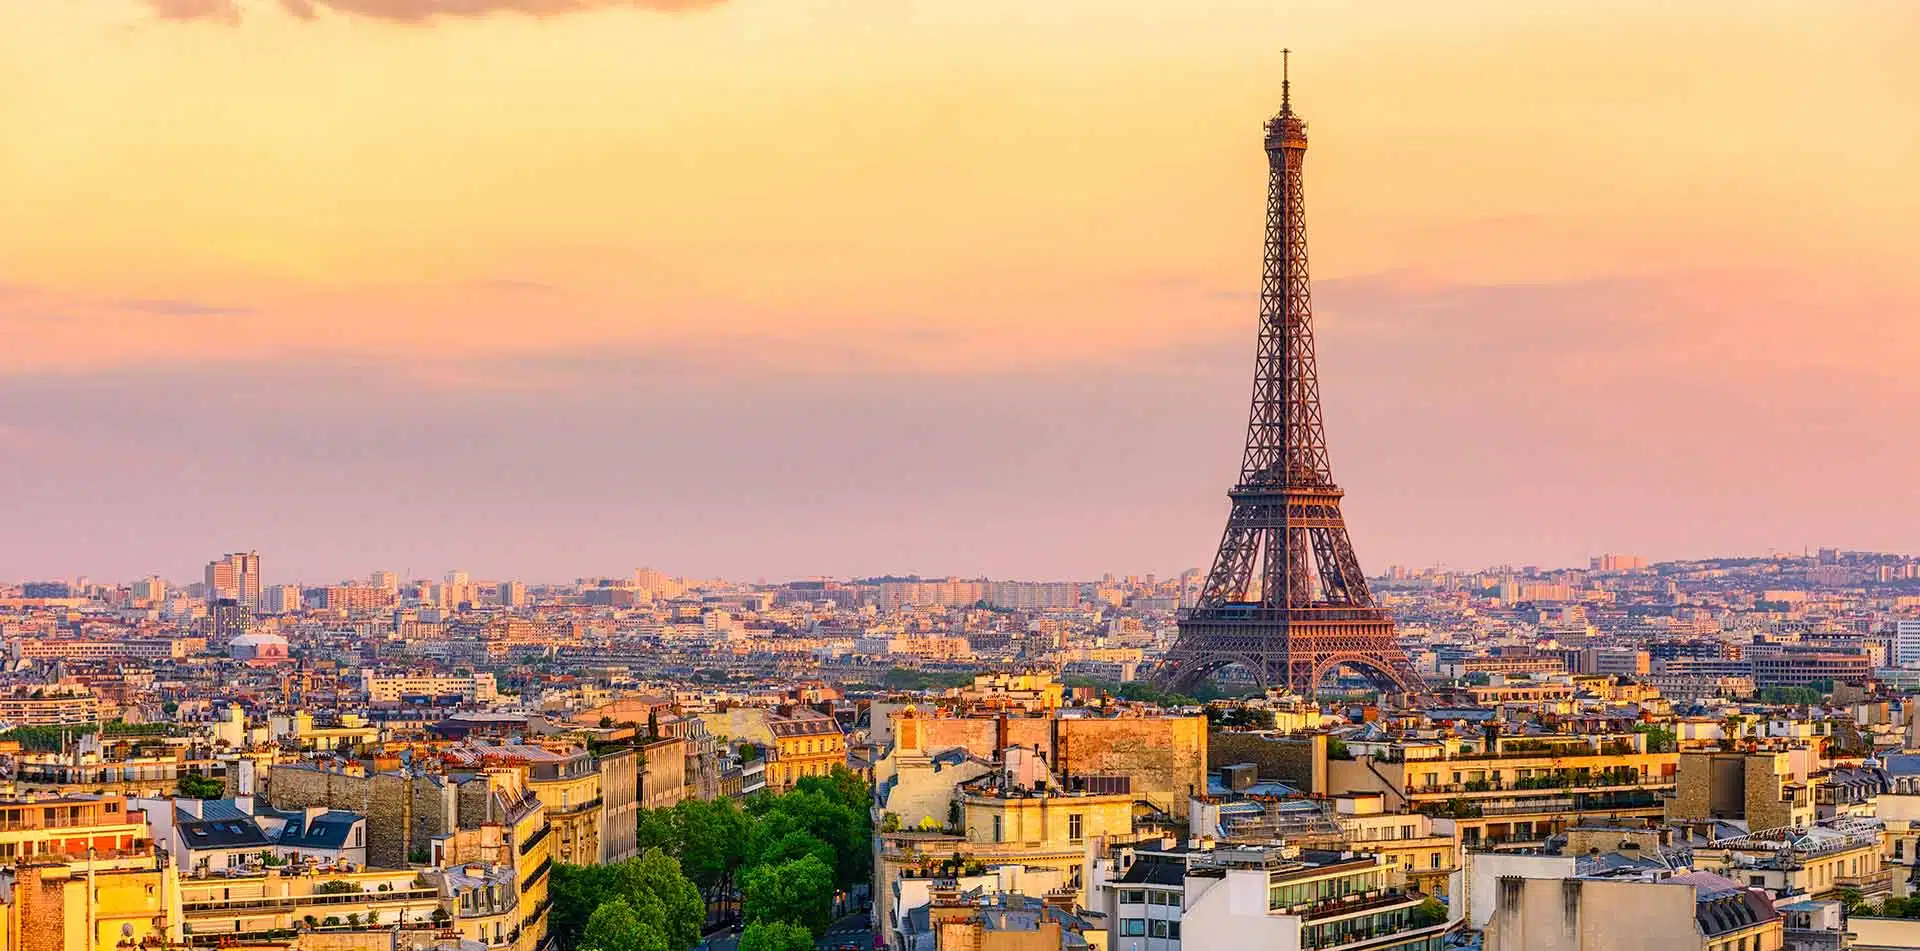 Paris skyline and Eiffel Tower, France